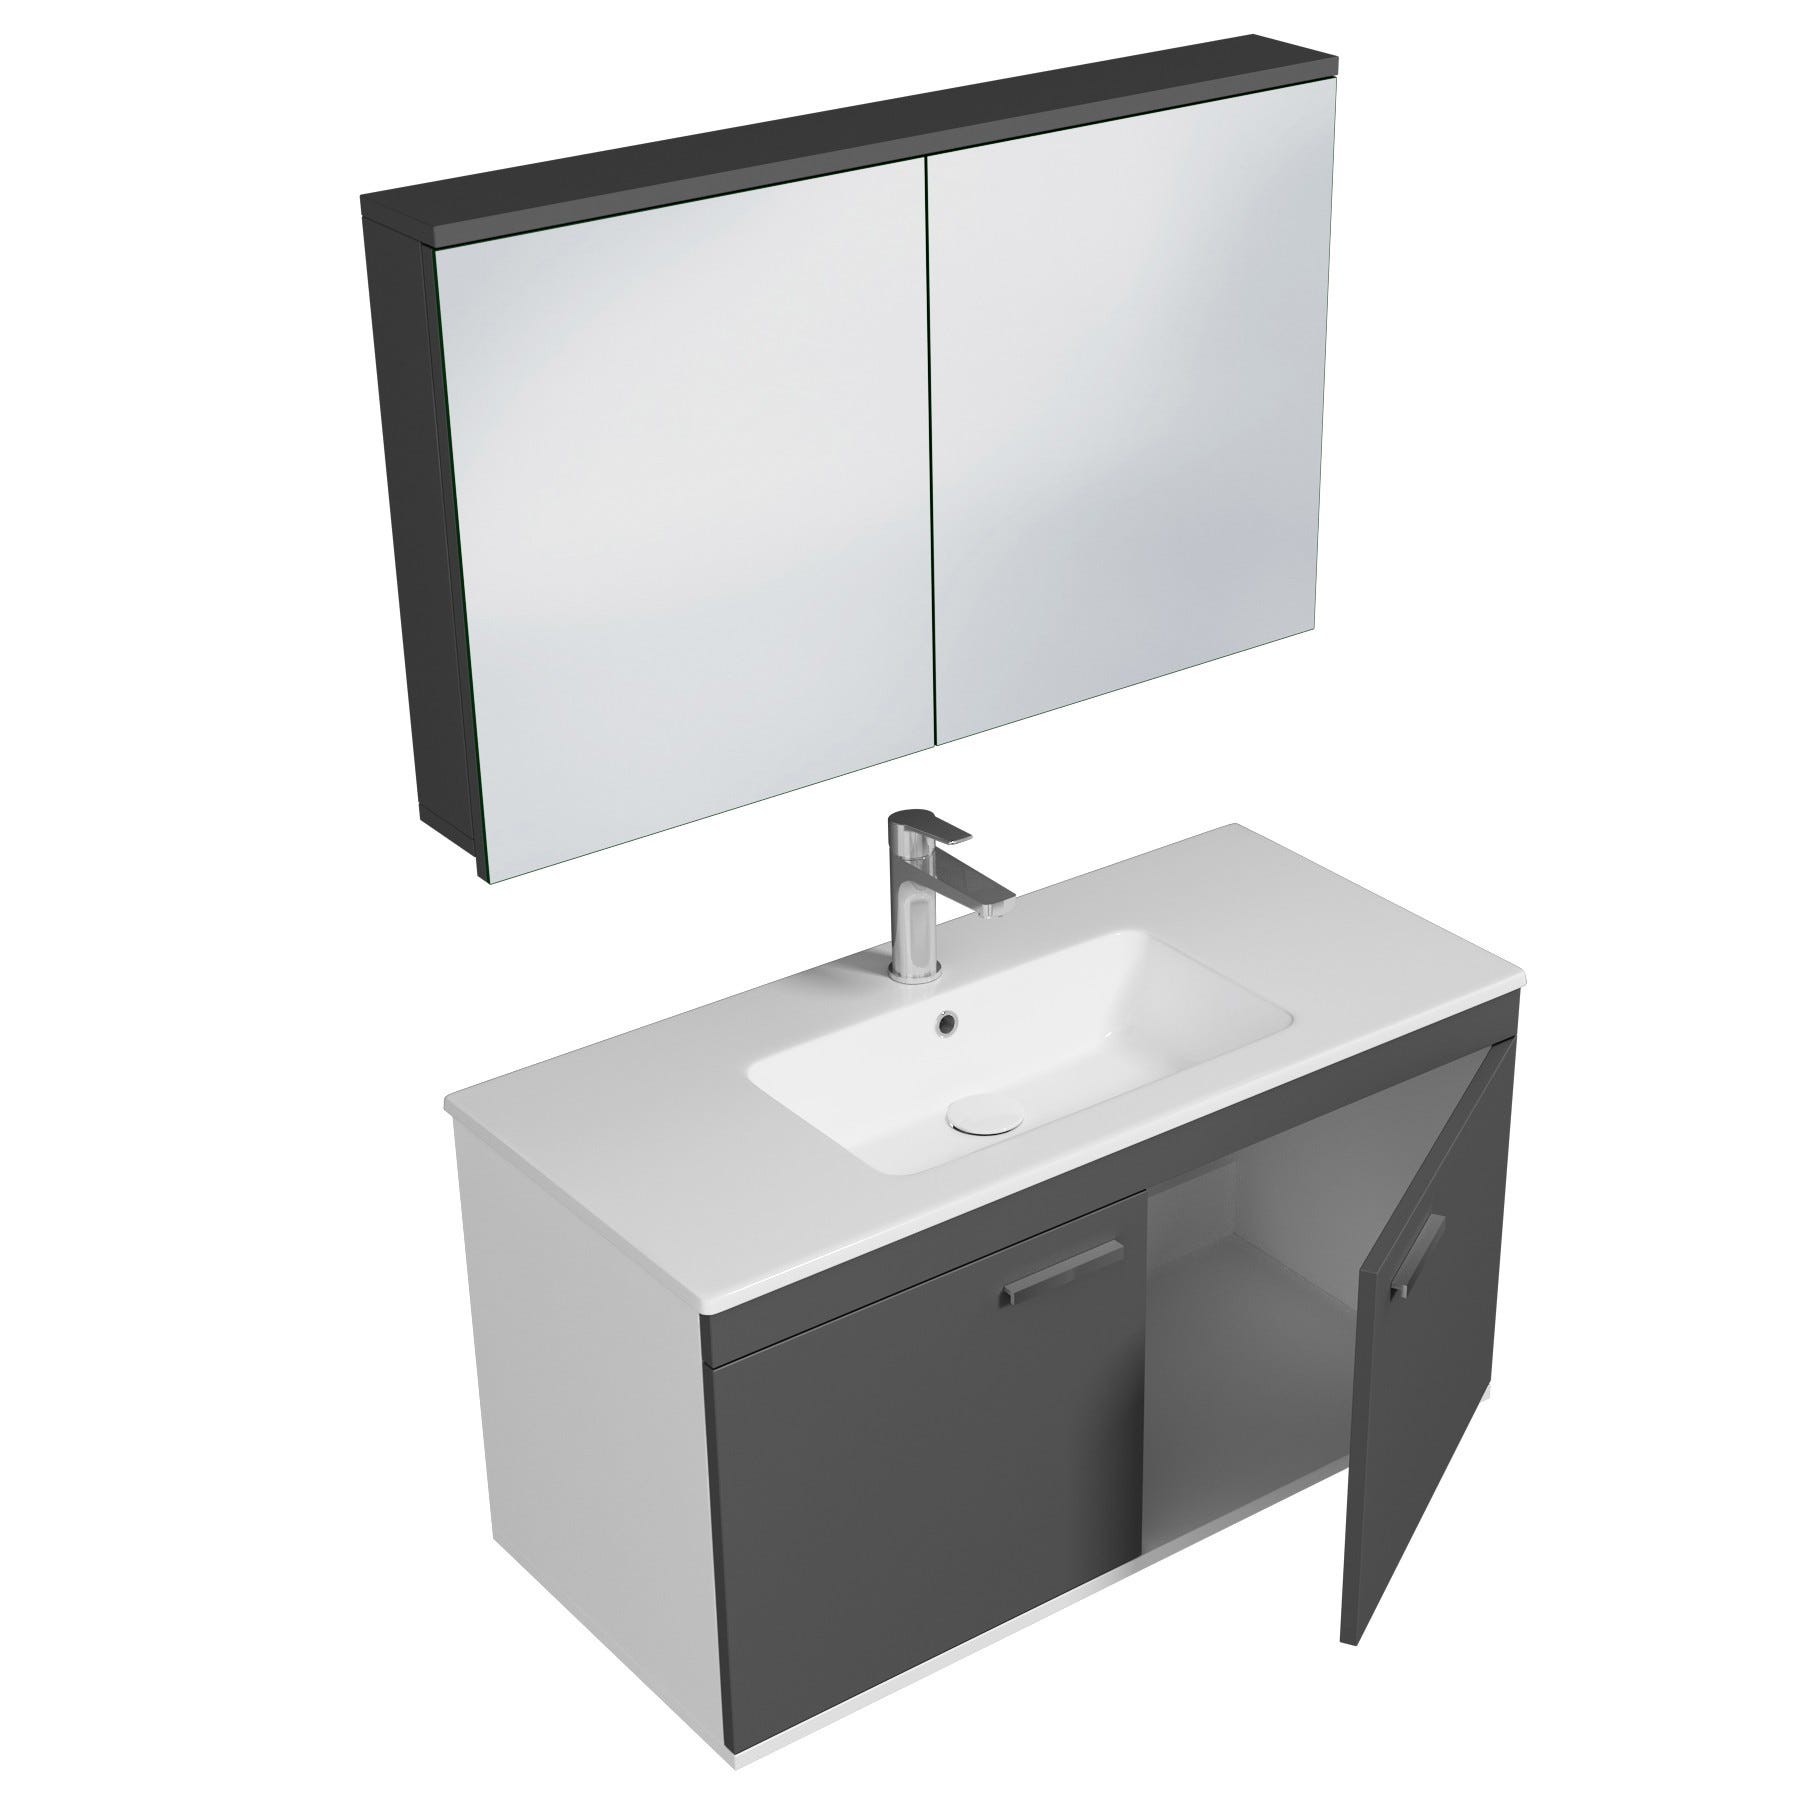 RUBITE Meuble salle de bain simple vasque 2 portes gris anthracite largeur 100 cm + miroir armoire 1